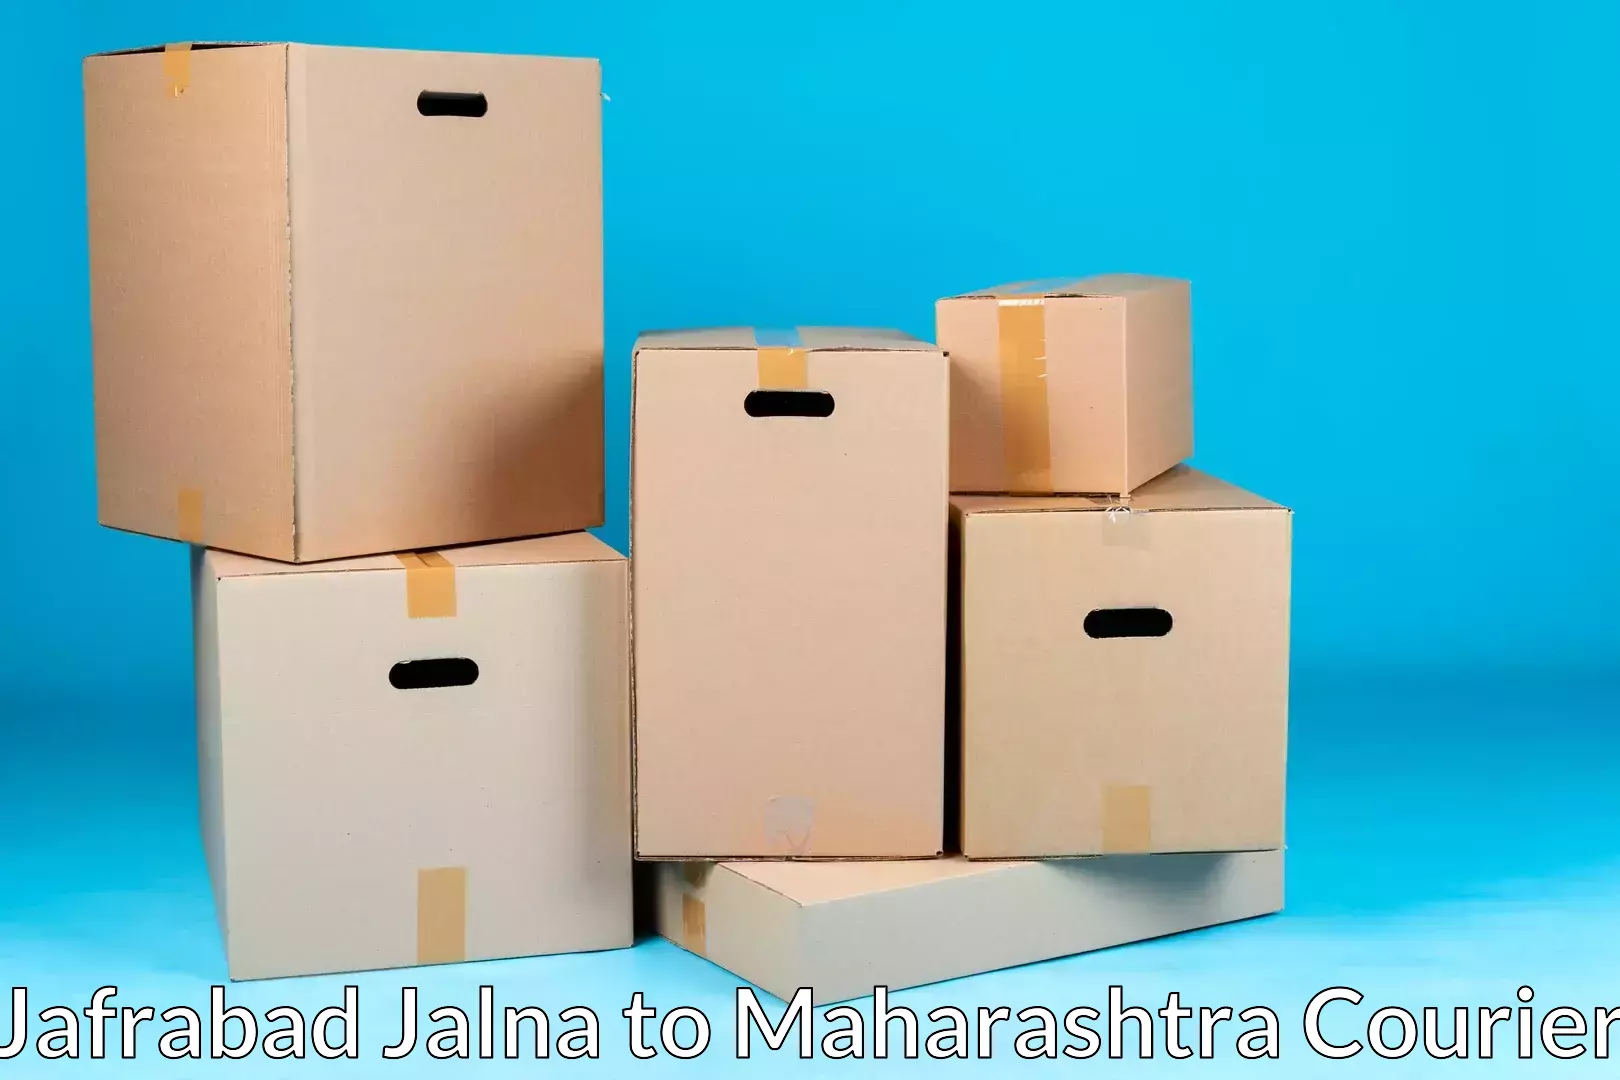 Furniture transport professionals Jafrabad Jalna to Shirur Anantpal